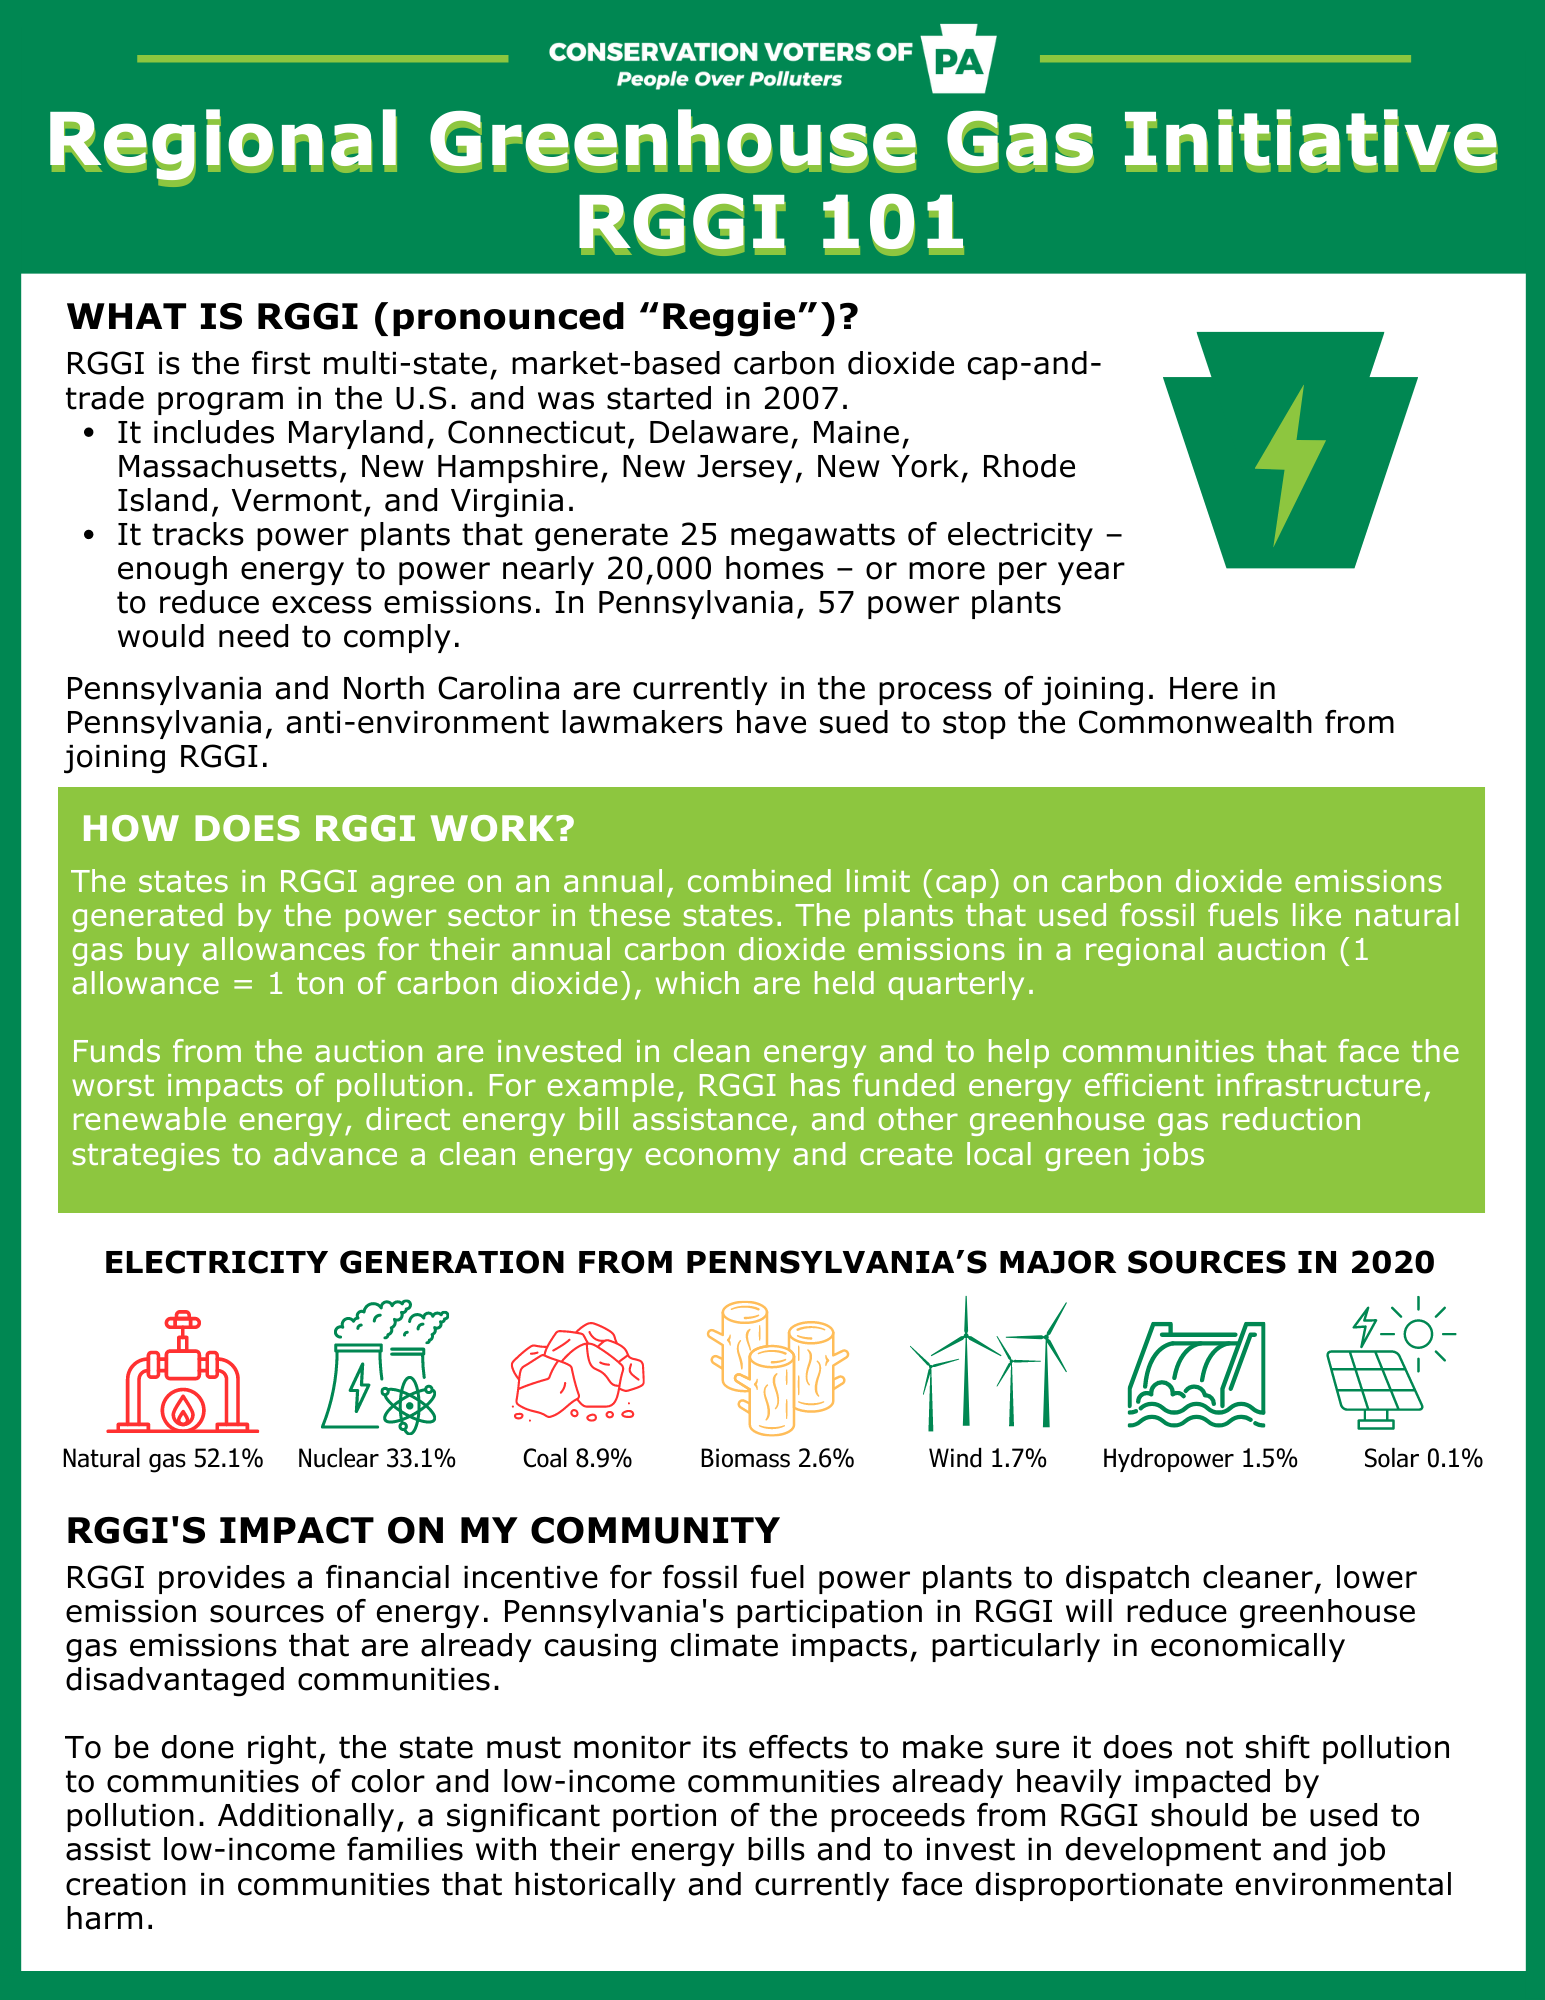 Regional Greenhouse Gas Initiative Fact Sheet